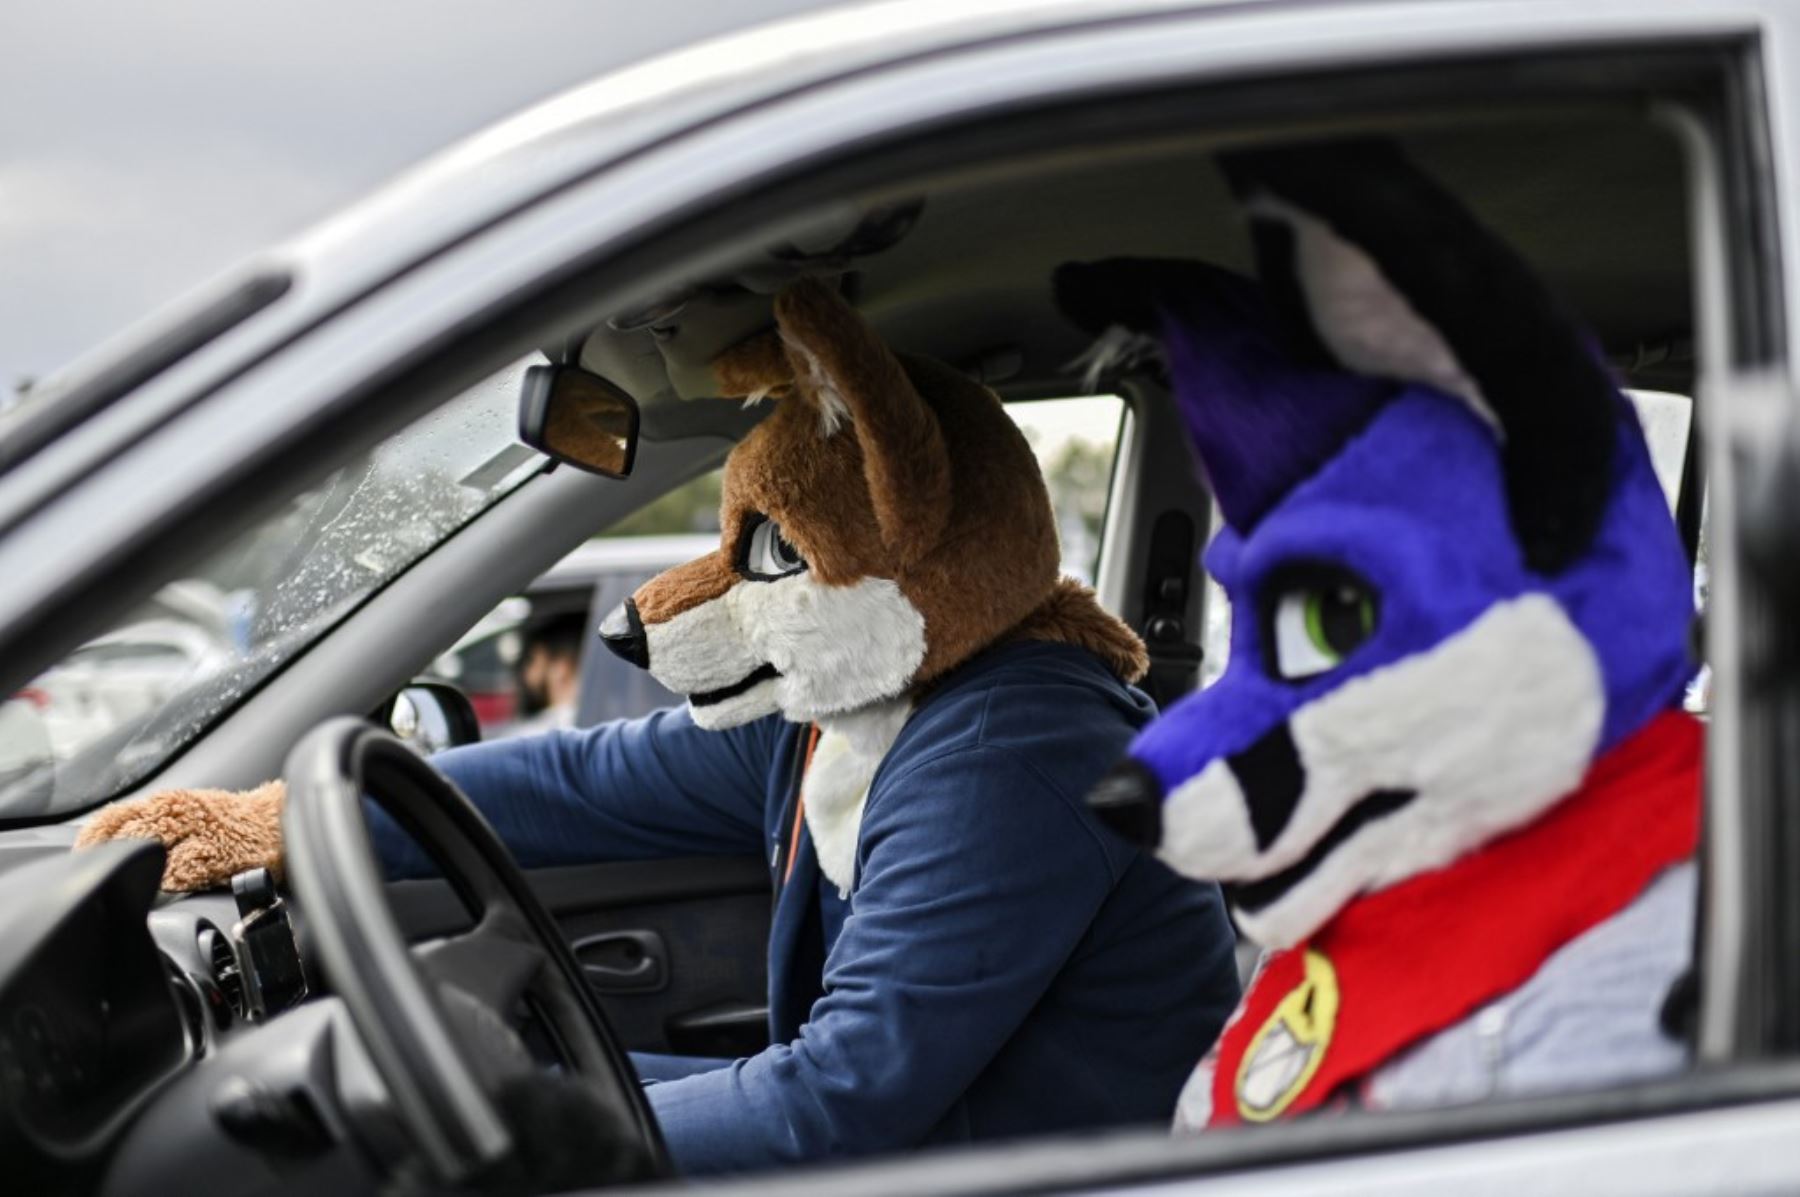 Personas disfrazadas ven una película desde un automóvil en un autocine instalado en el hipódromo Hermanos Rodríguez de la Ciudad de México, en medio de la pandemia del nuevo coronavirus.

Foto:AFP